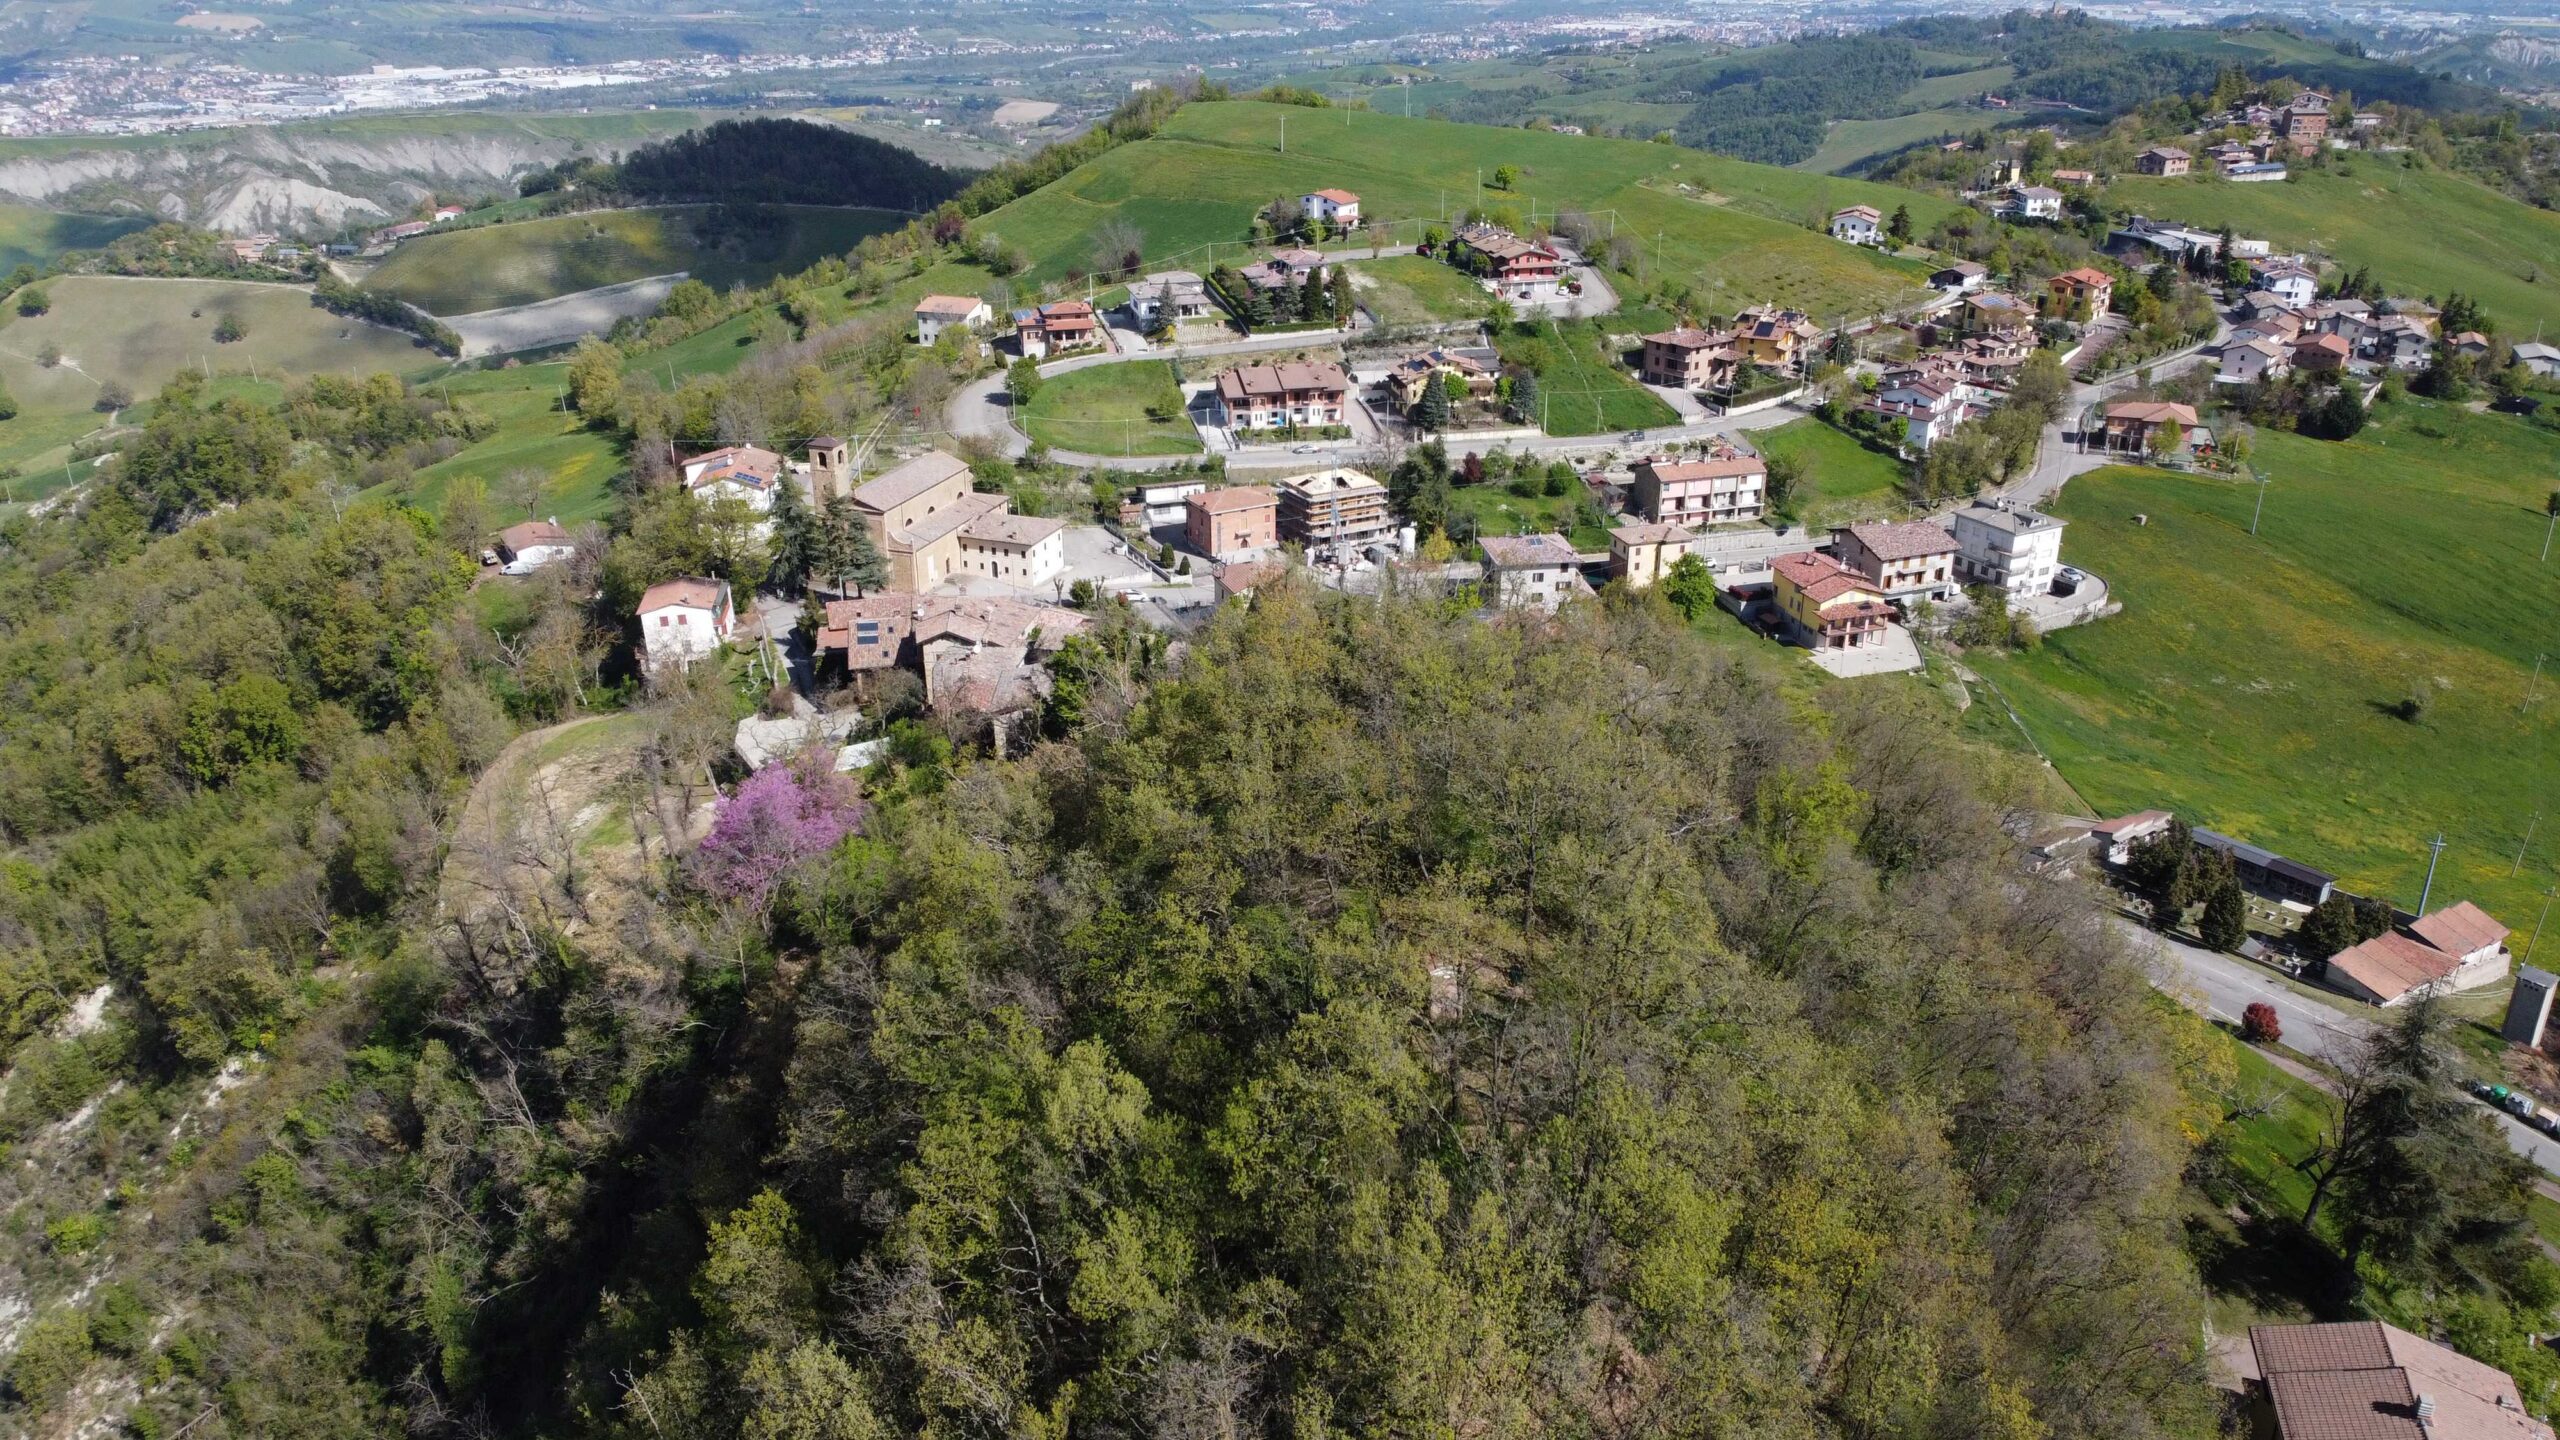  Prignano / Il Castello ritrovato di Matilde di Canossa, partono gli scavi (video)